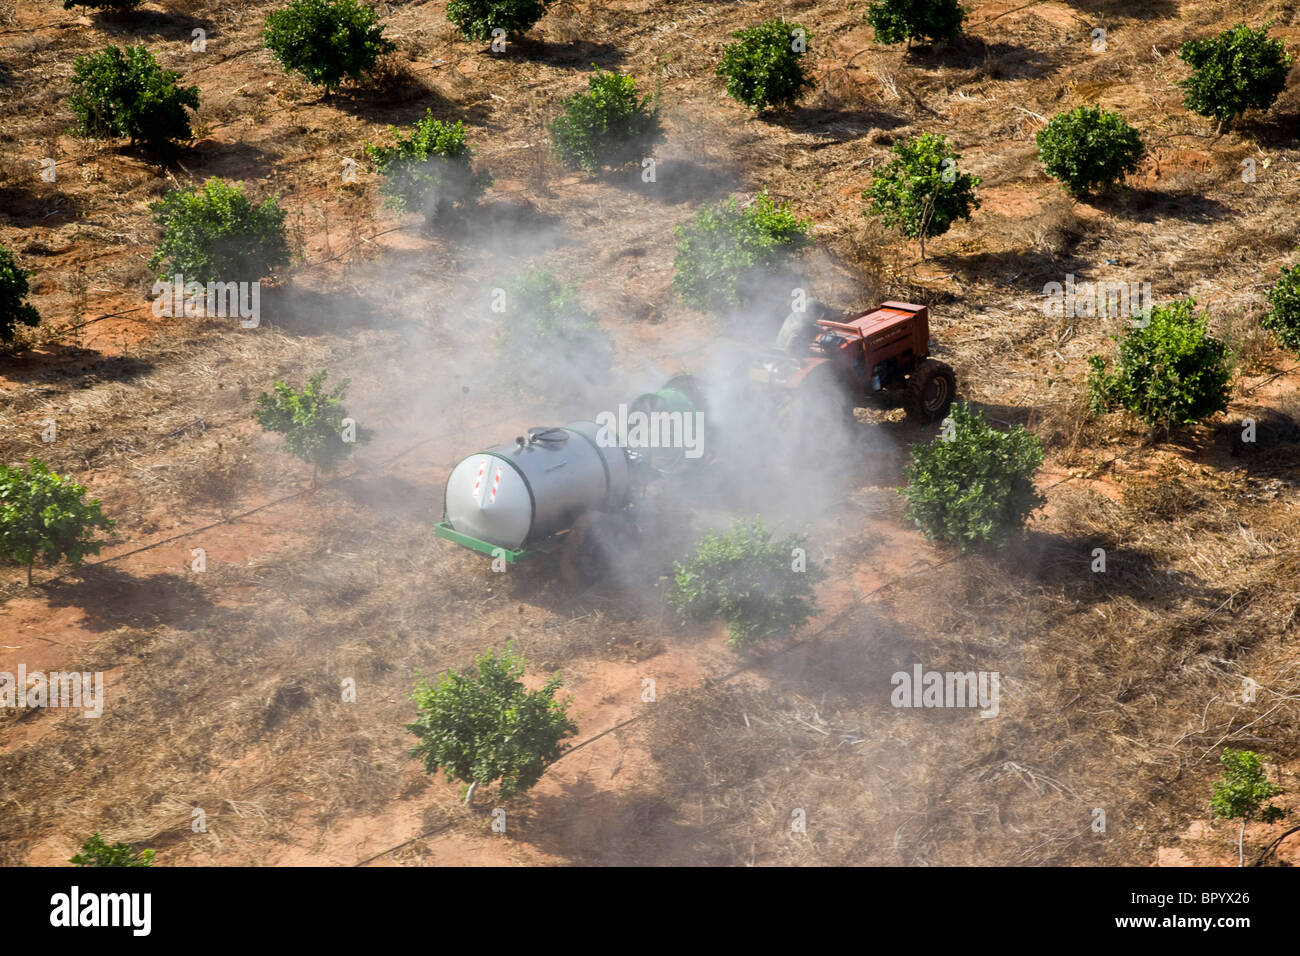 Immagine aerea di un trattore dustind una piantagione di Sharon Foto Stock